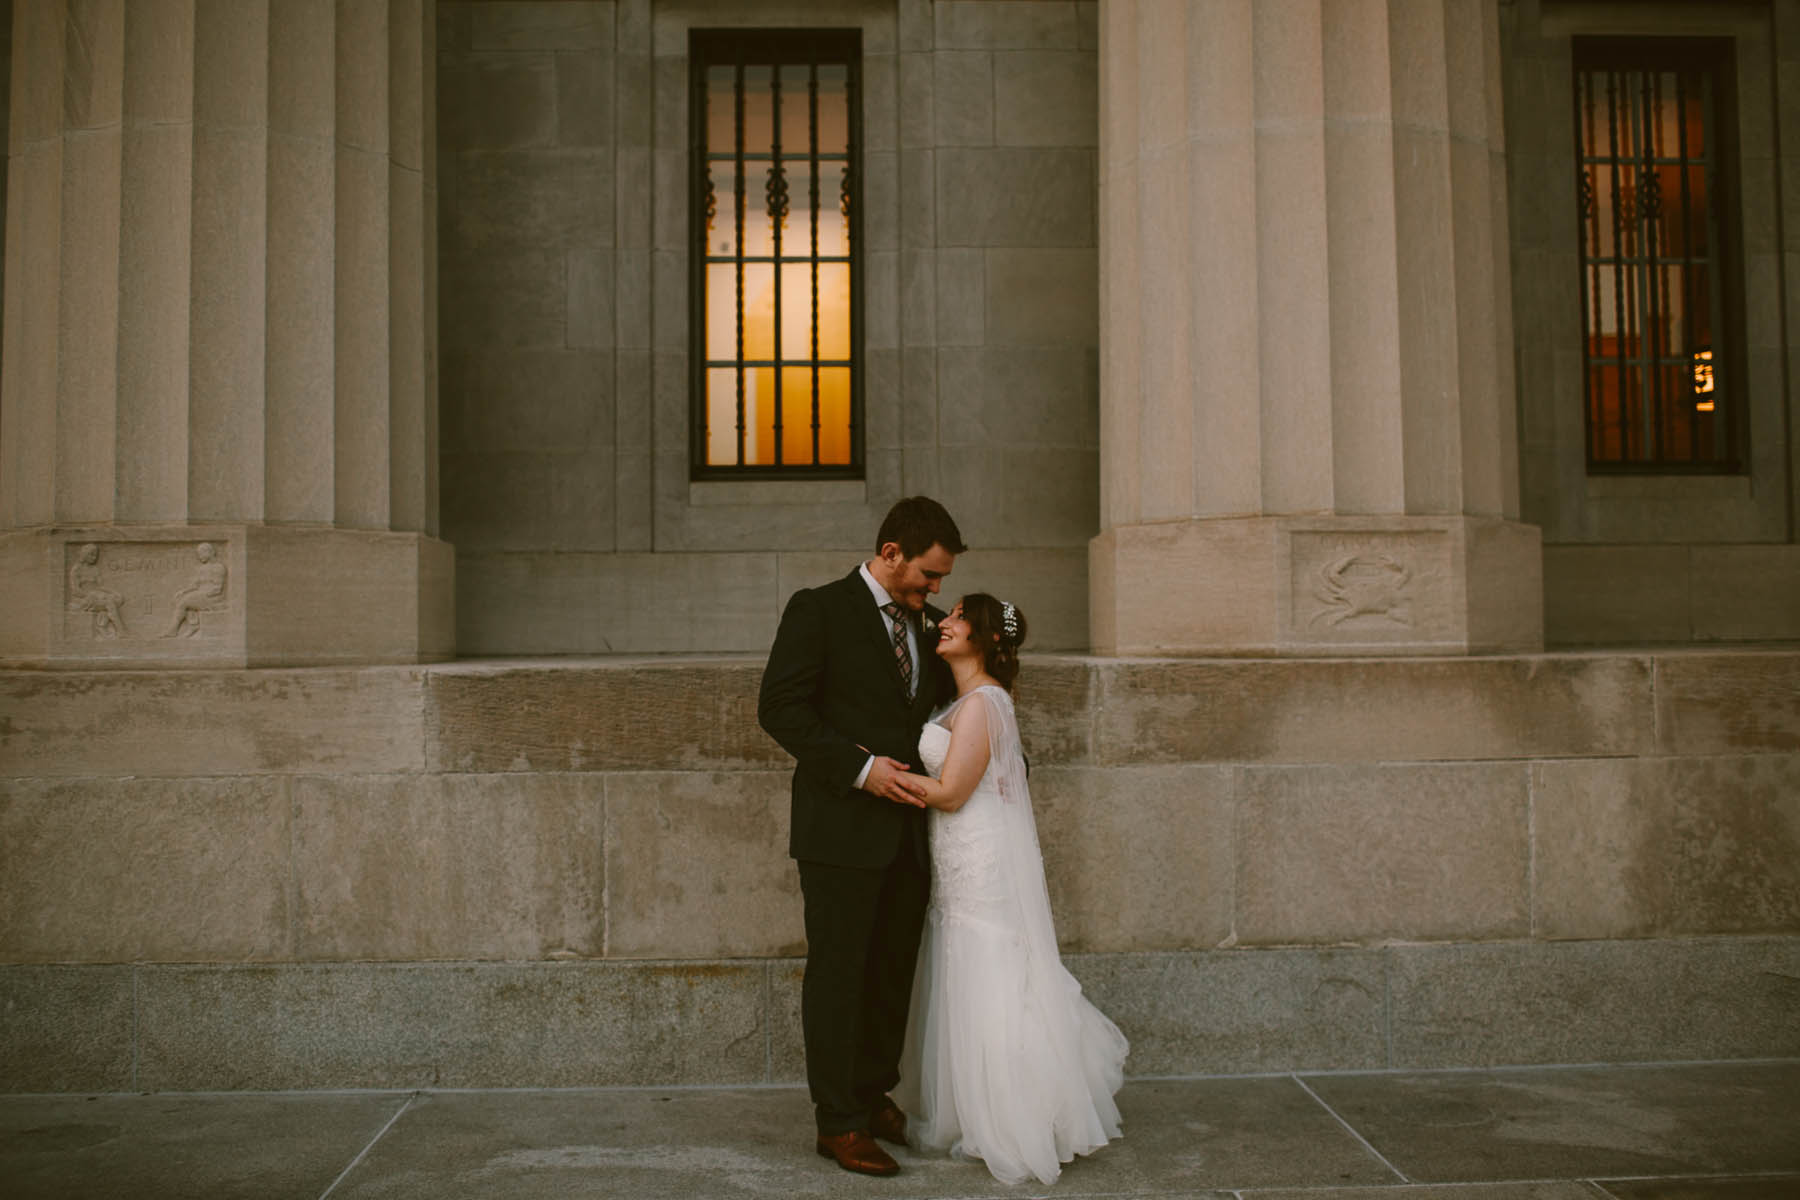 Wedding photographers Indianapolis